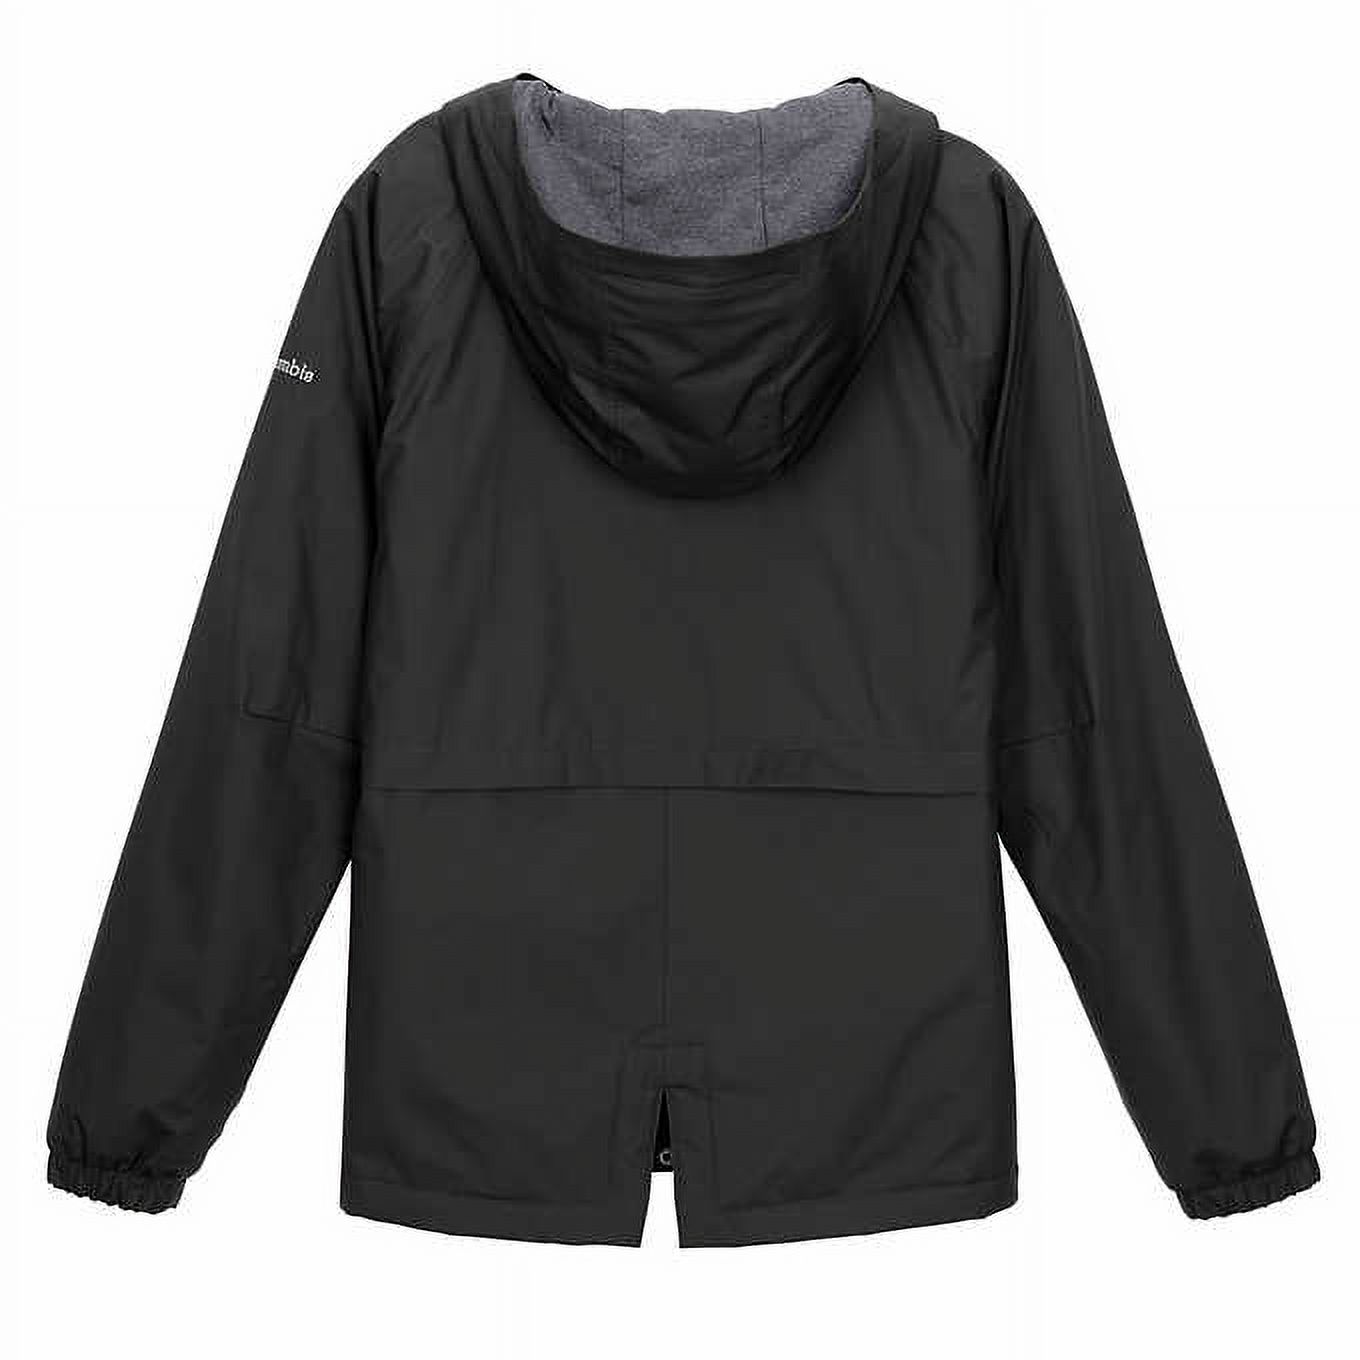 Columbia Women's Waterproof Omni-Tech Waterproof Hooded Jacket, Black, Medium - image 2 of 4